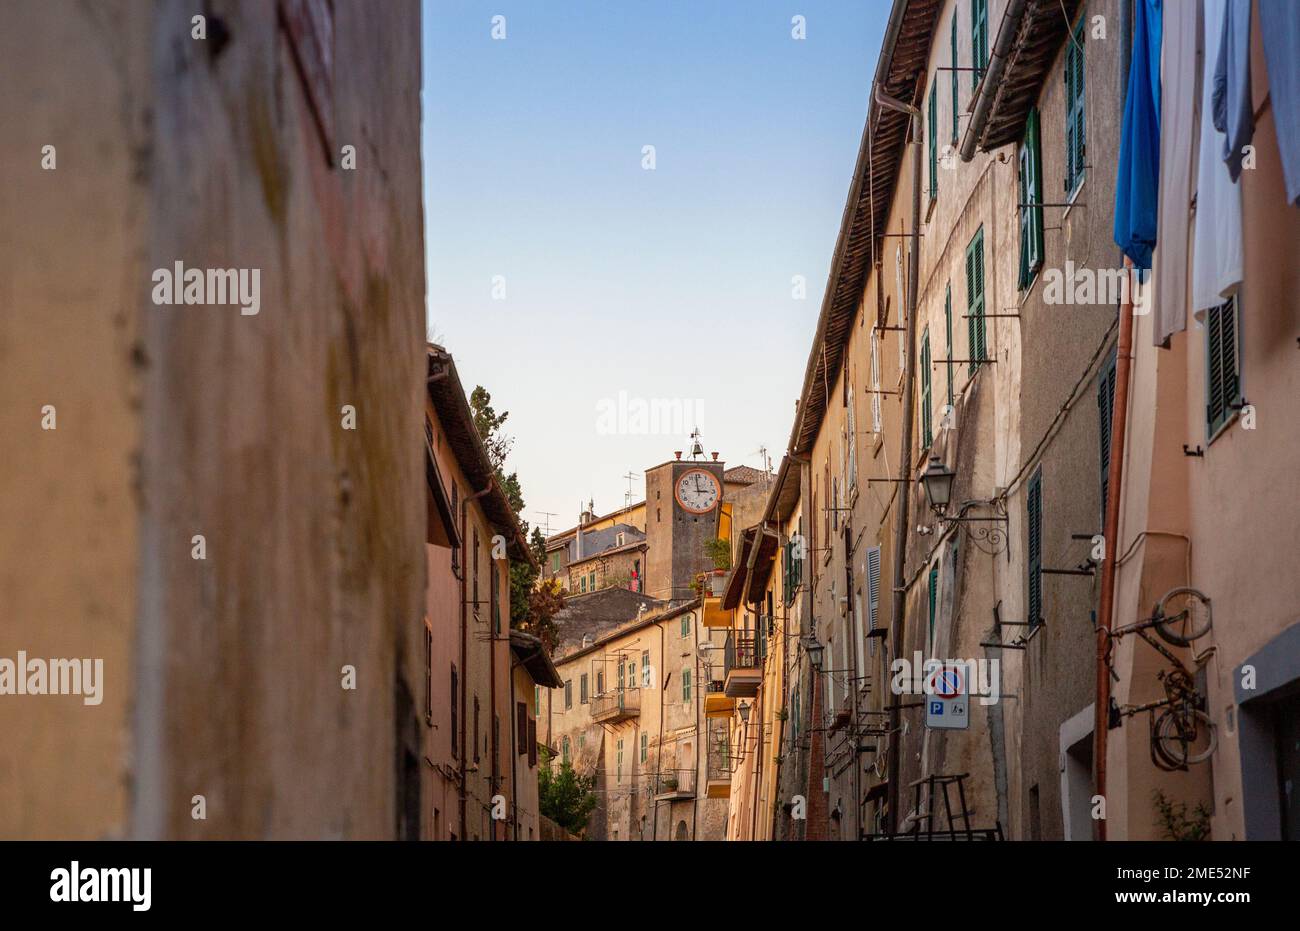 Italia, Lazio, Capodimonte, file di case con orologio pubblico sullo sfondo Foto Stock